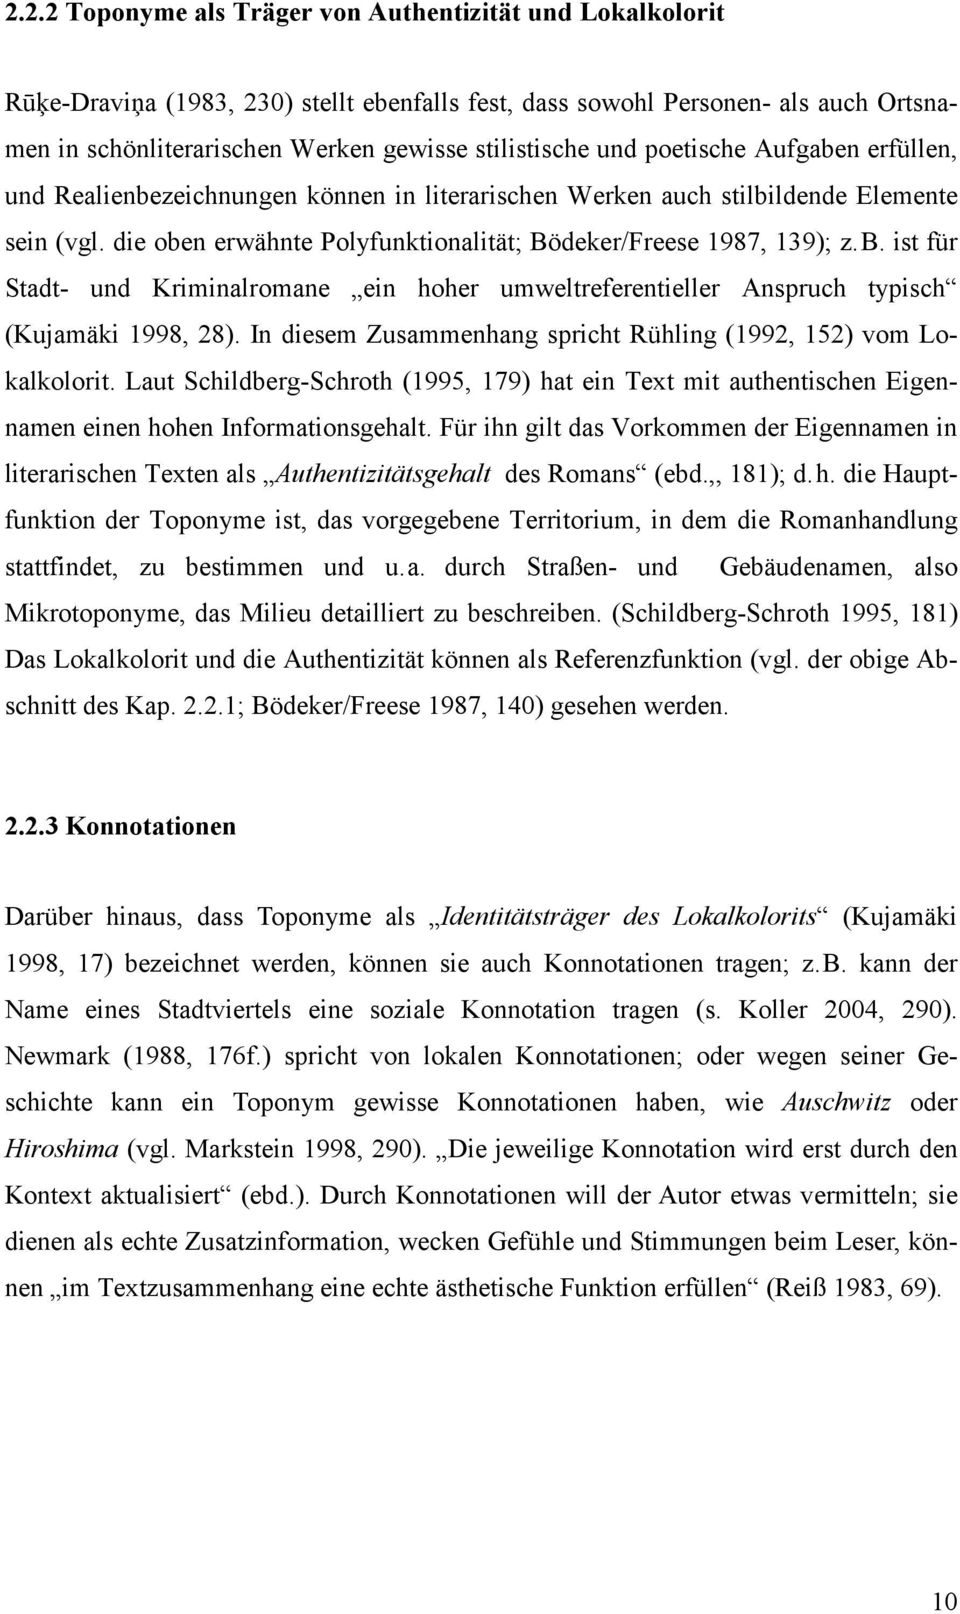 In diesem Zusammenhang spricht Rühling (1992, 152) vom Lokalkolorit. Laut Schildberg-Schroth (1995, 179) hat ein Text mit authentischen Eigennamen einen hohen Informationsgehalt.